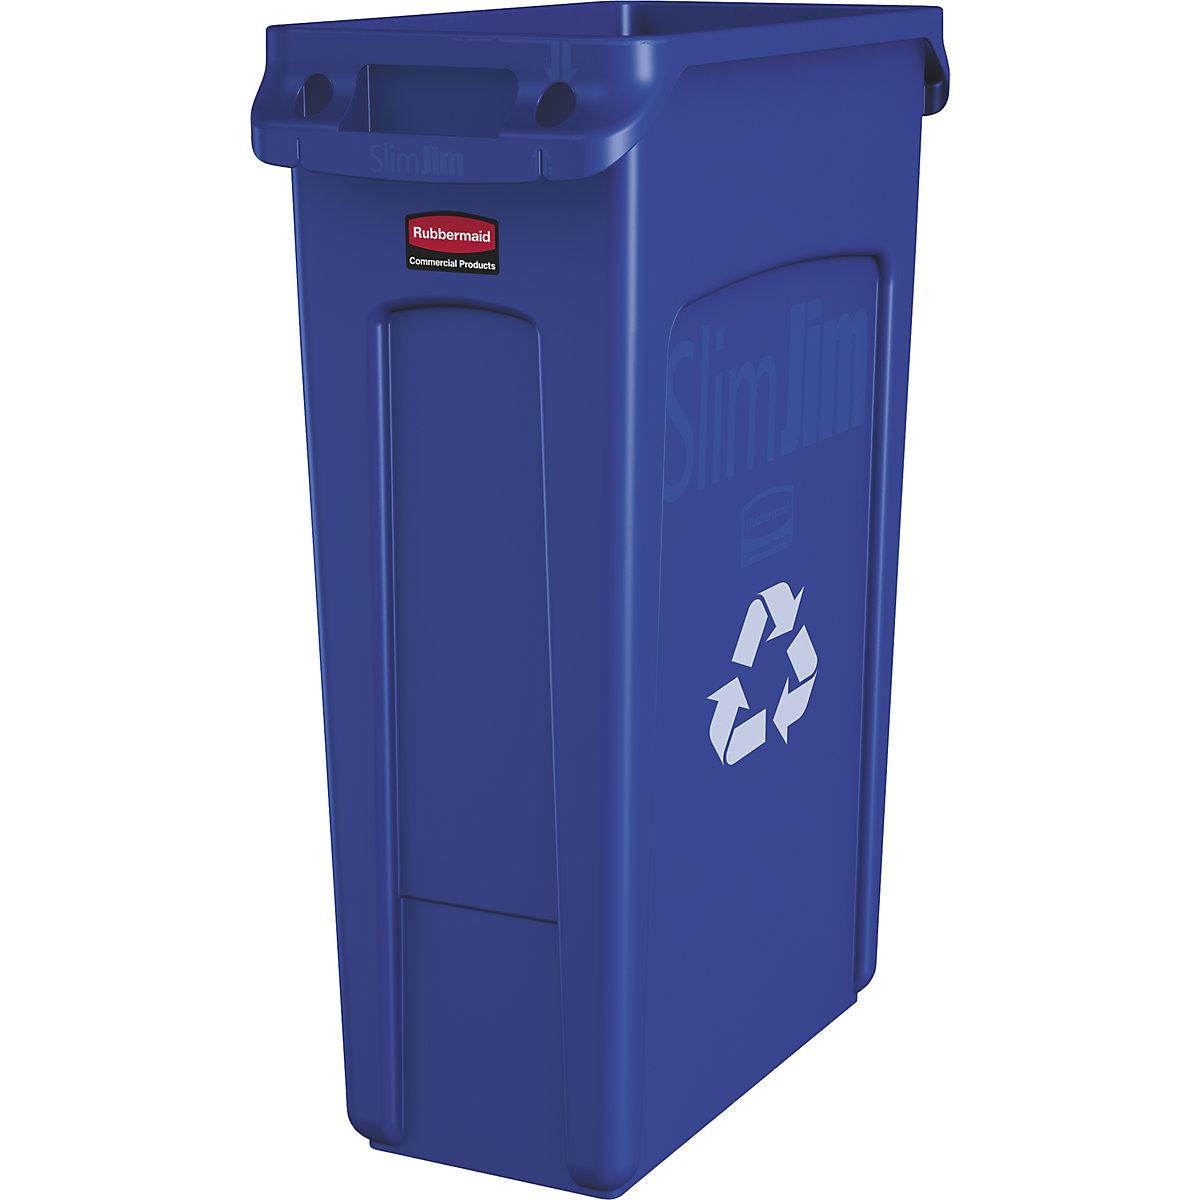 SLIM JIM® szelektív hulladékgyűjtő/szemetesvödör – Rubbermaid, űrtartalom 87 l, szellőzőcsatornákkal, kék-16